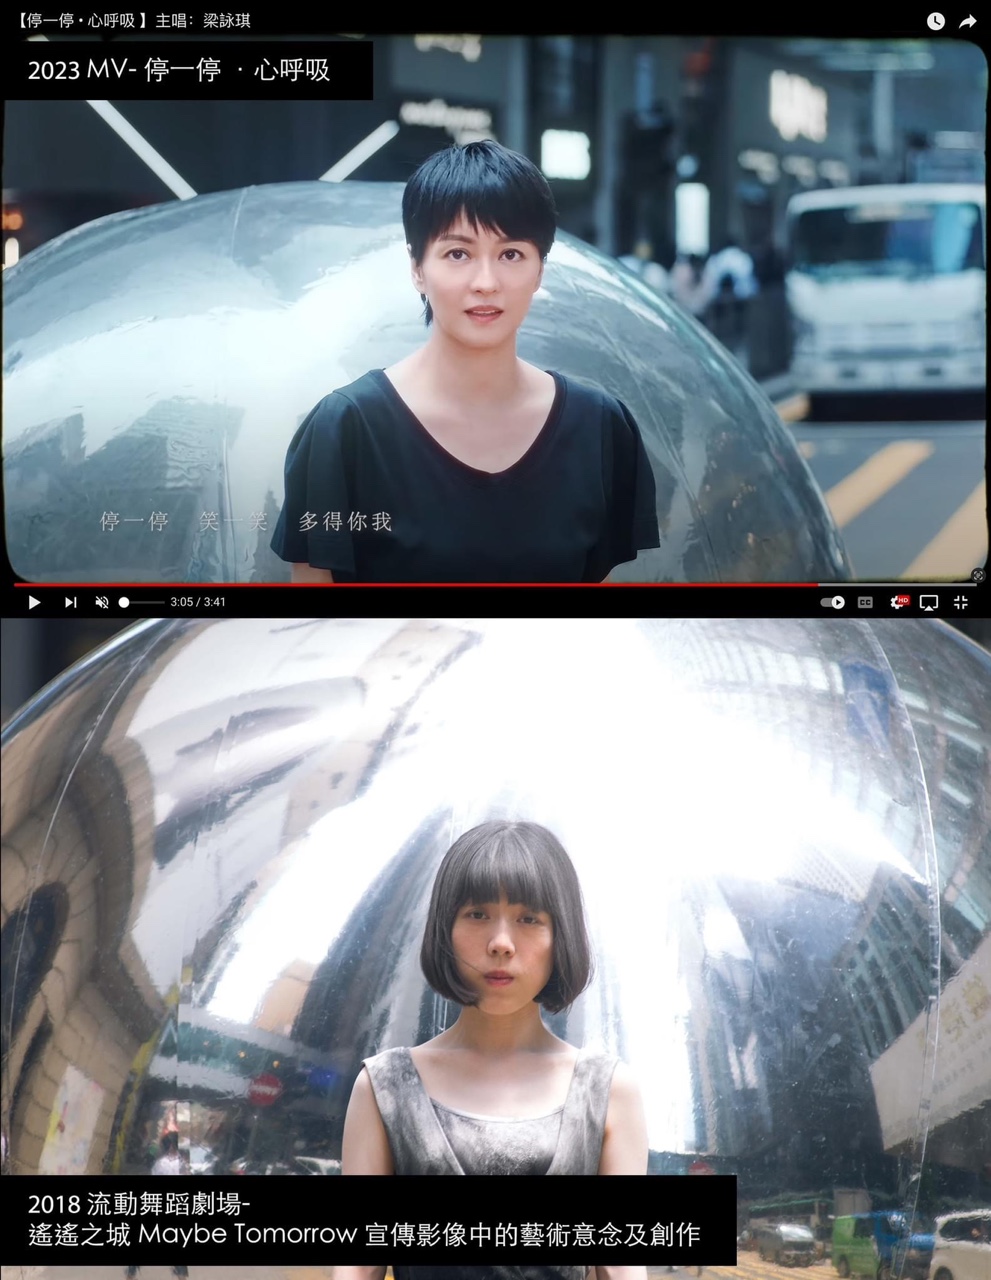 由梁詠琪主唱、袁劍偉執導的歌曲《停一停·心呼吸》MV被指涉嫌抄襲 2018年流動舞蹈劇場作品《遙遙之城 Maybe Tomorrow 》。